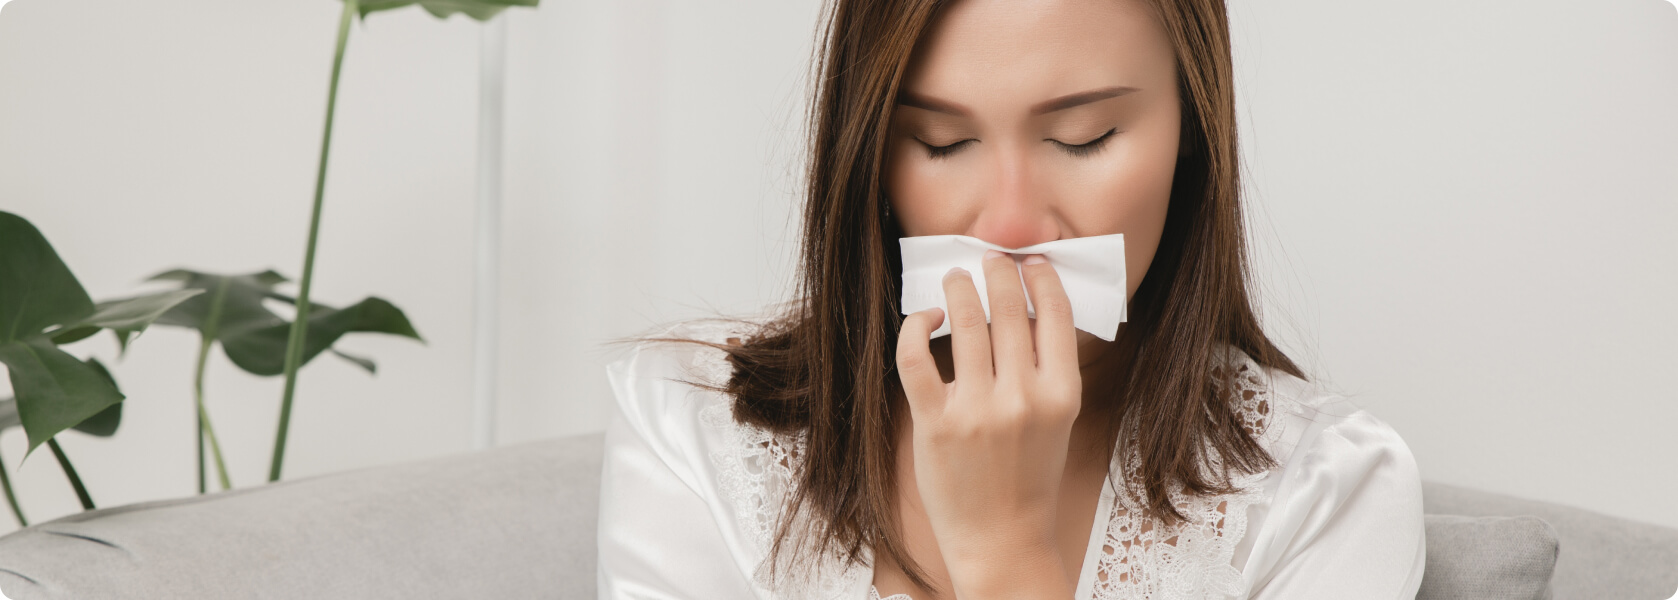 Nasenpolypen - Wer ist am häufigsten von Polypen betroffen?